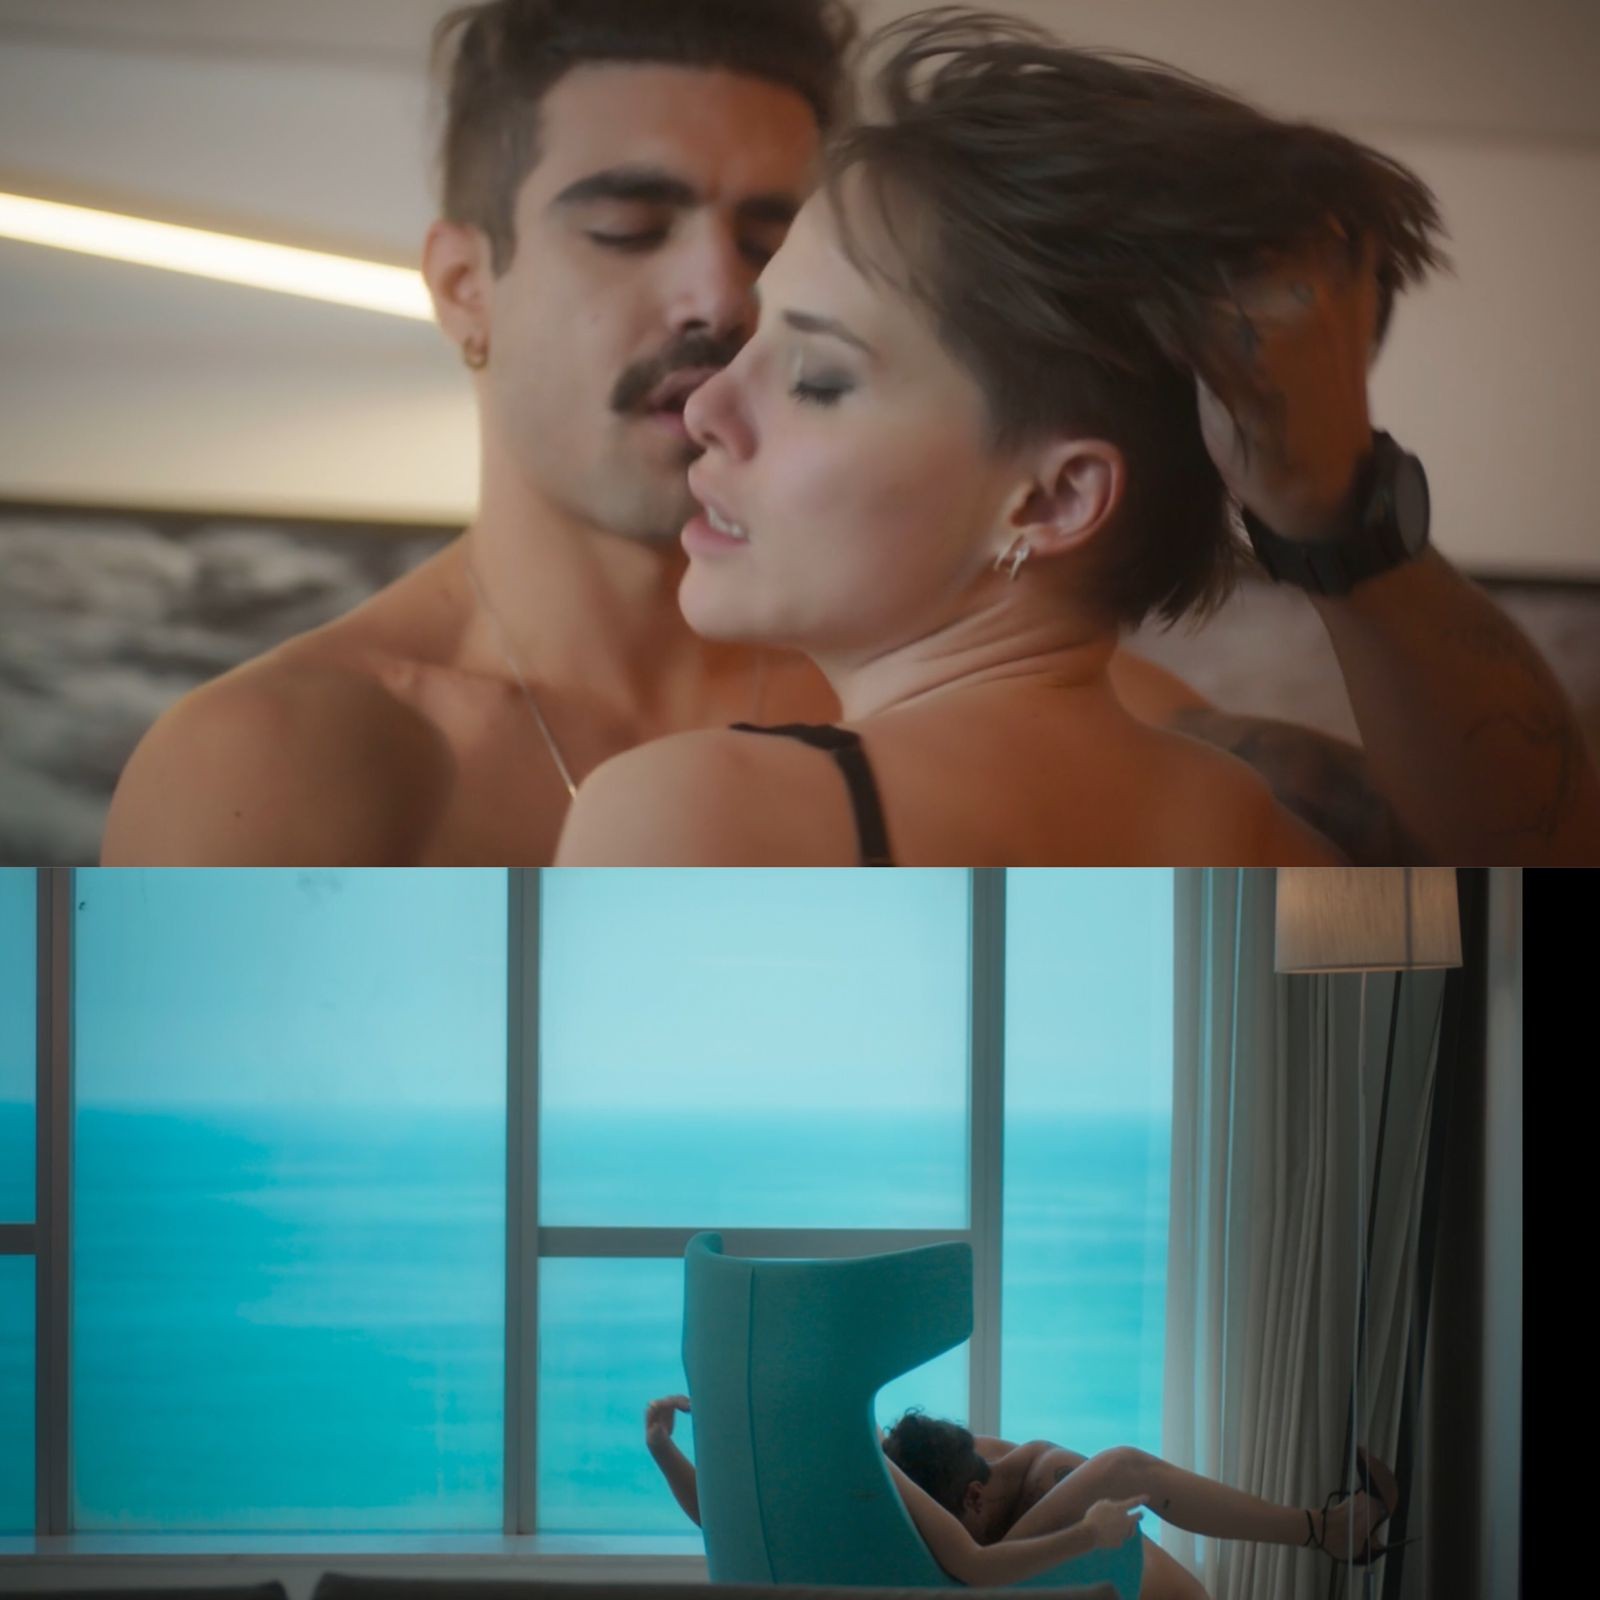 Em um quarto de hotel, o casal aparece em diversos ângulos fazendo sexo — Foto: Reprodução/TV Globo